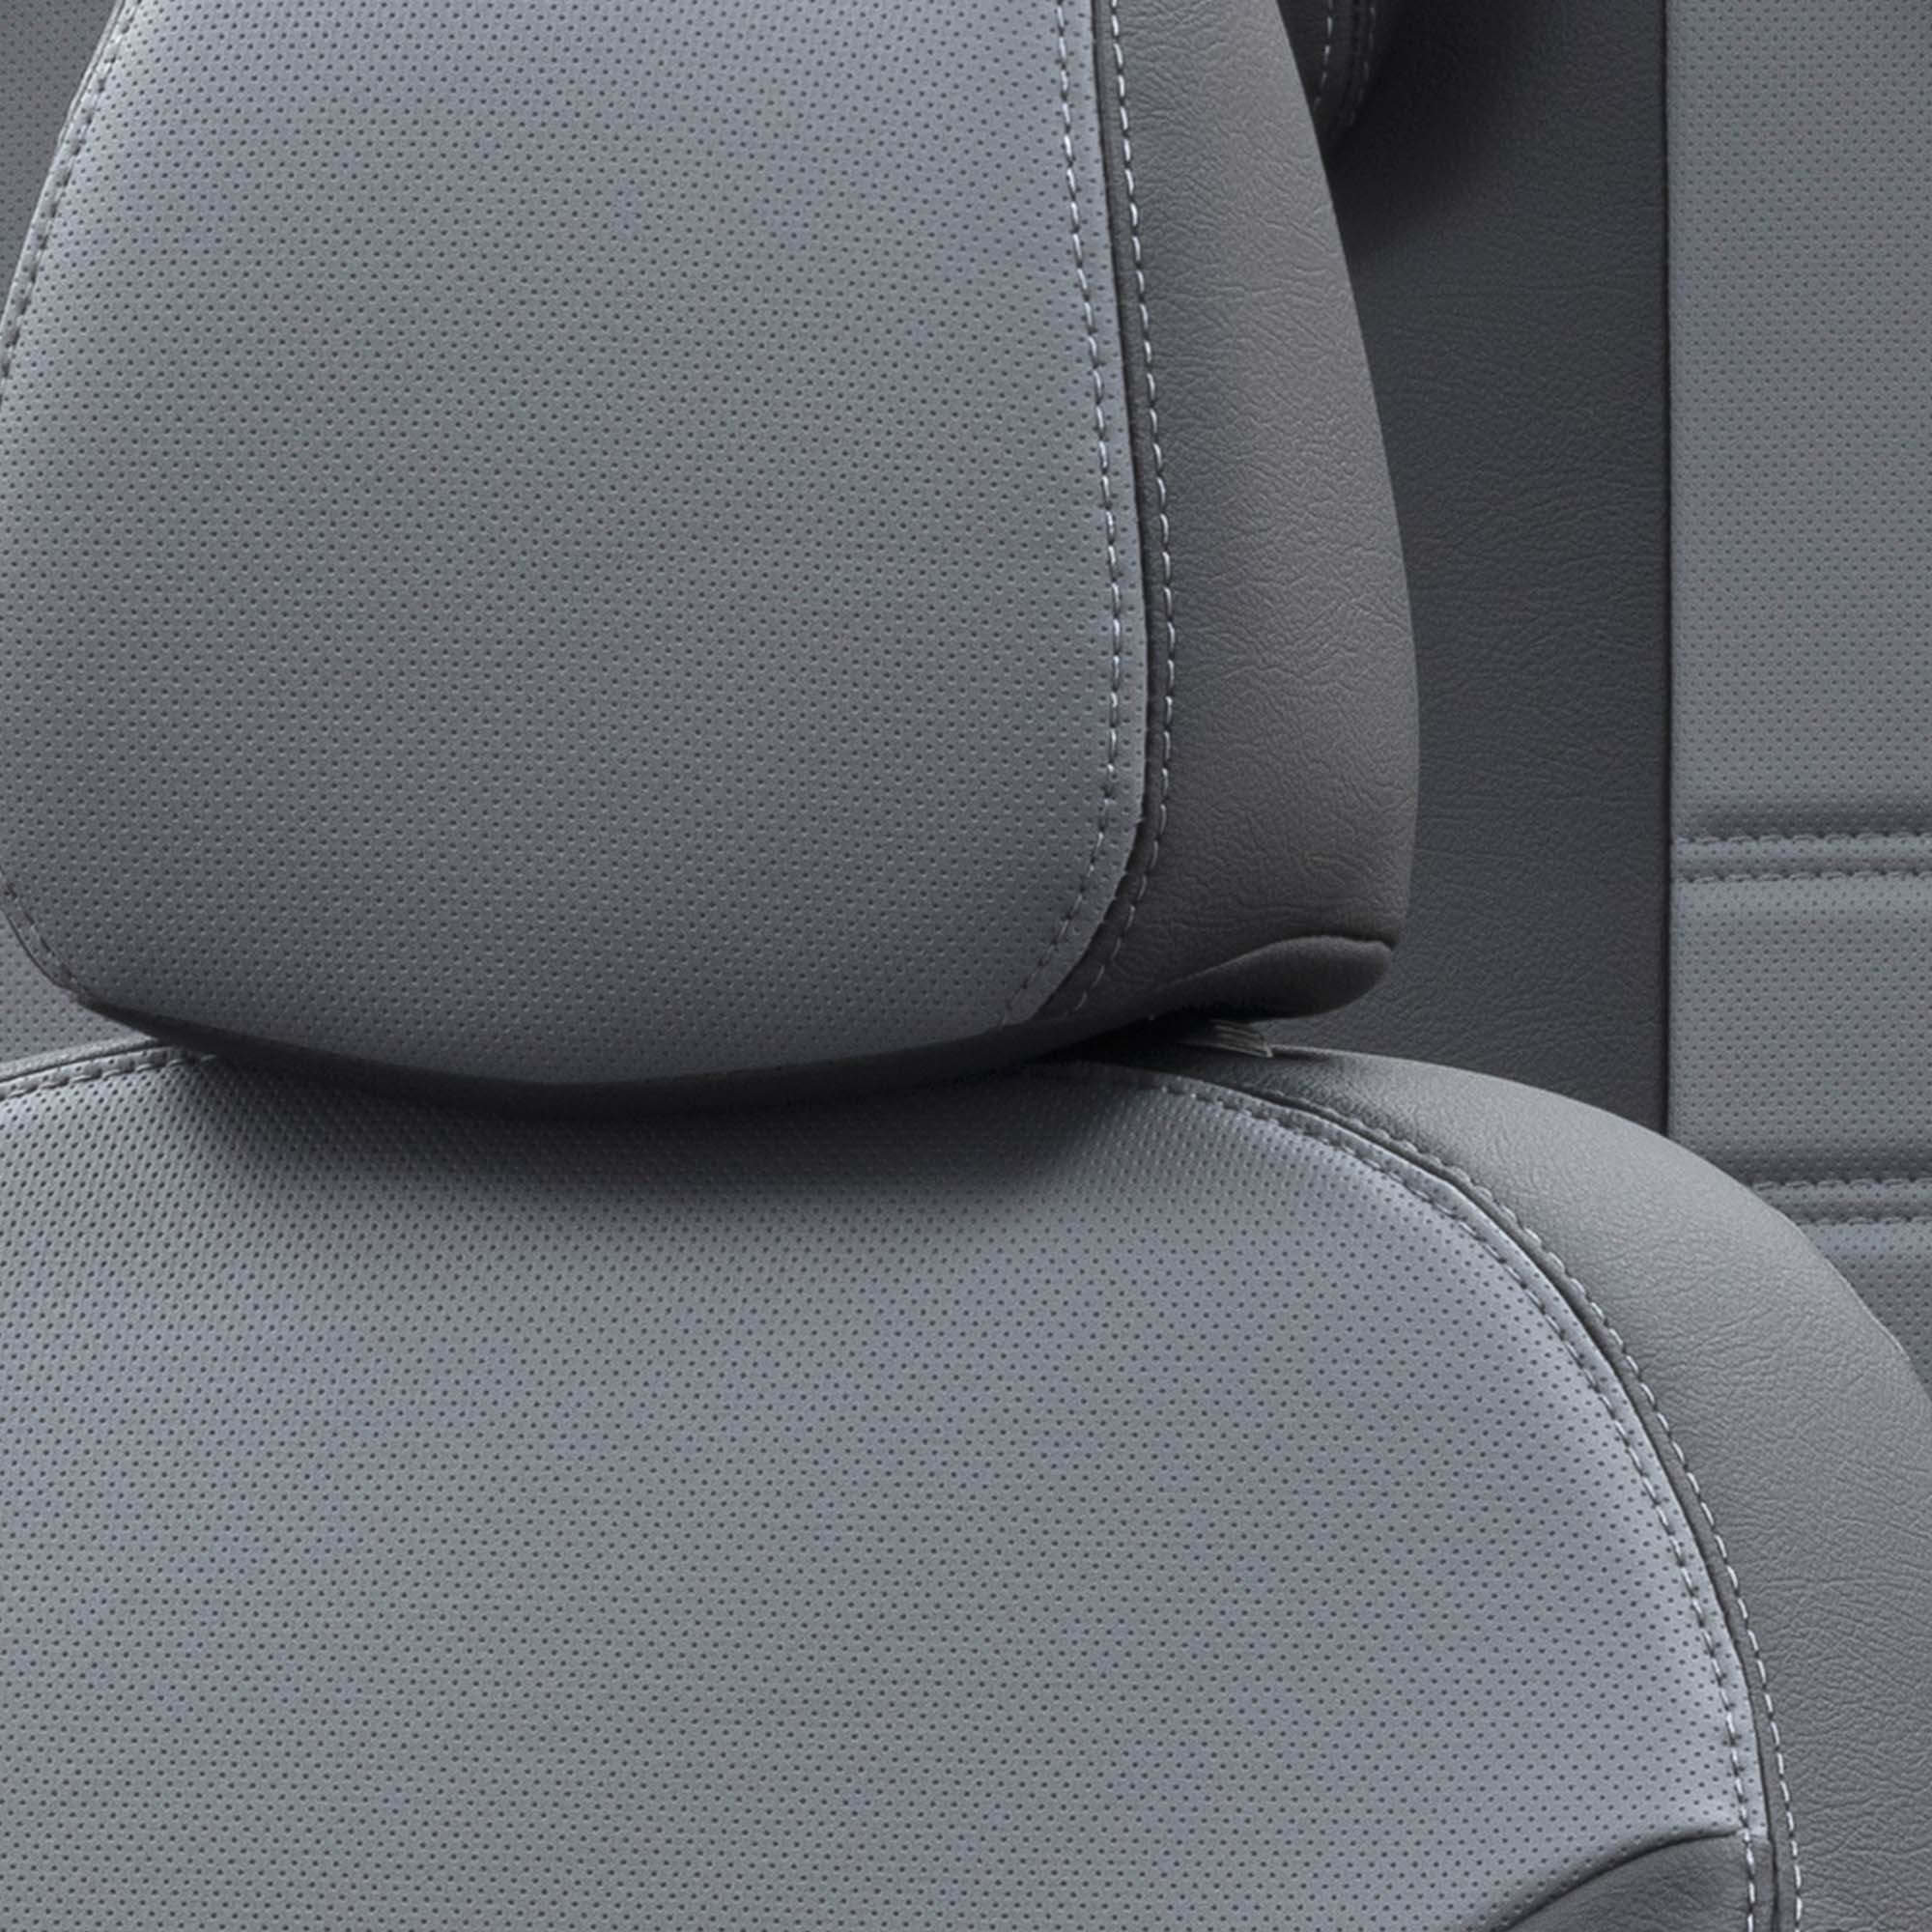 Otom Audi A4 20152020 Özel Üretim Koltuk Kılıfı İstanbul Design 2015